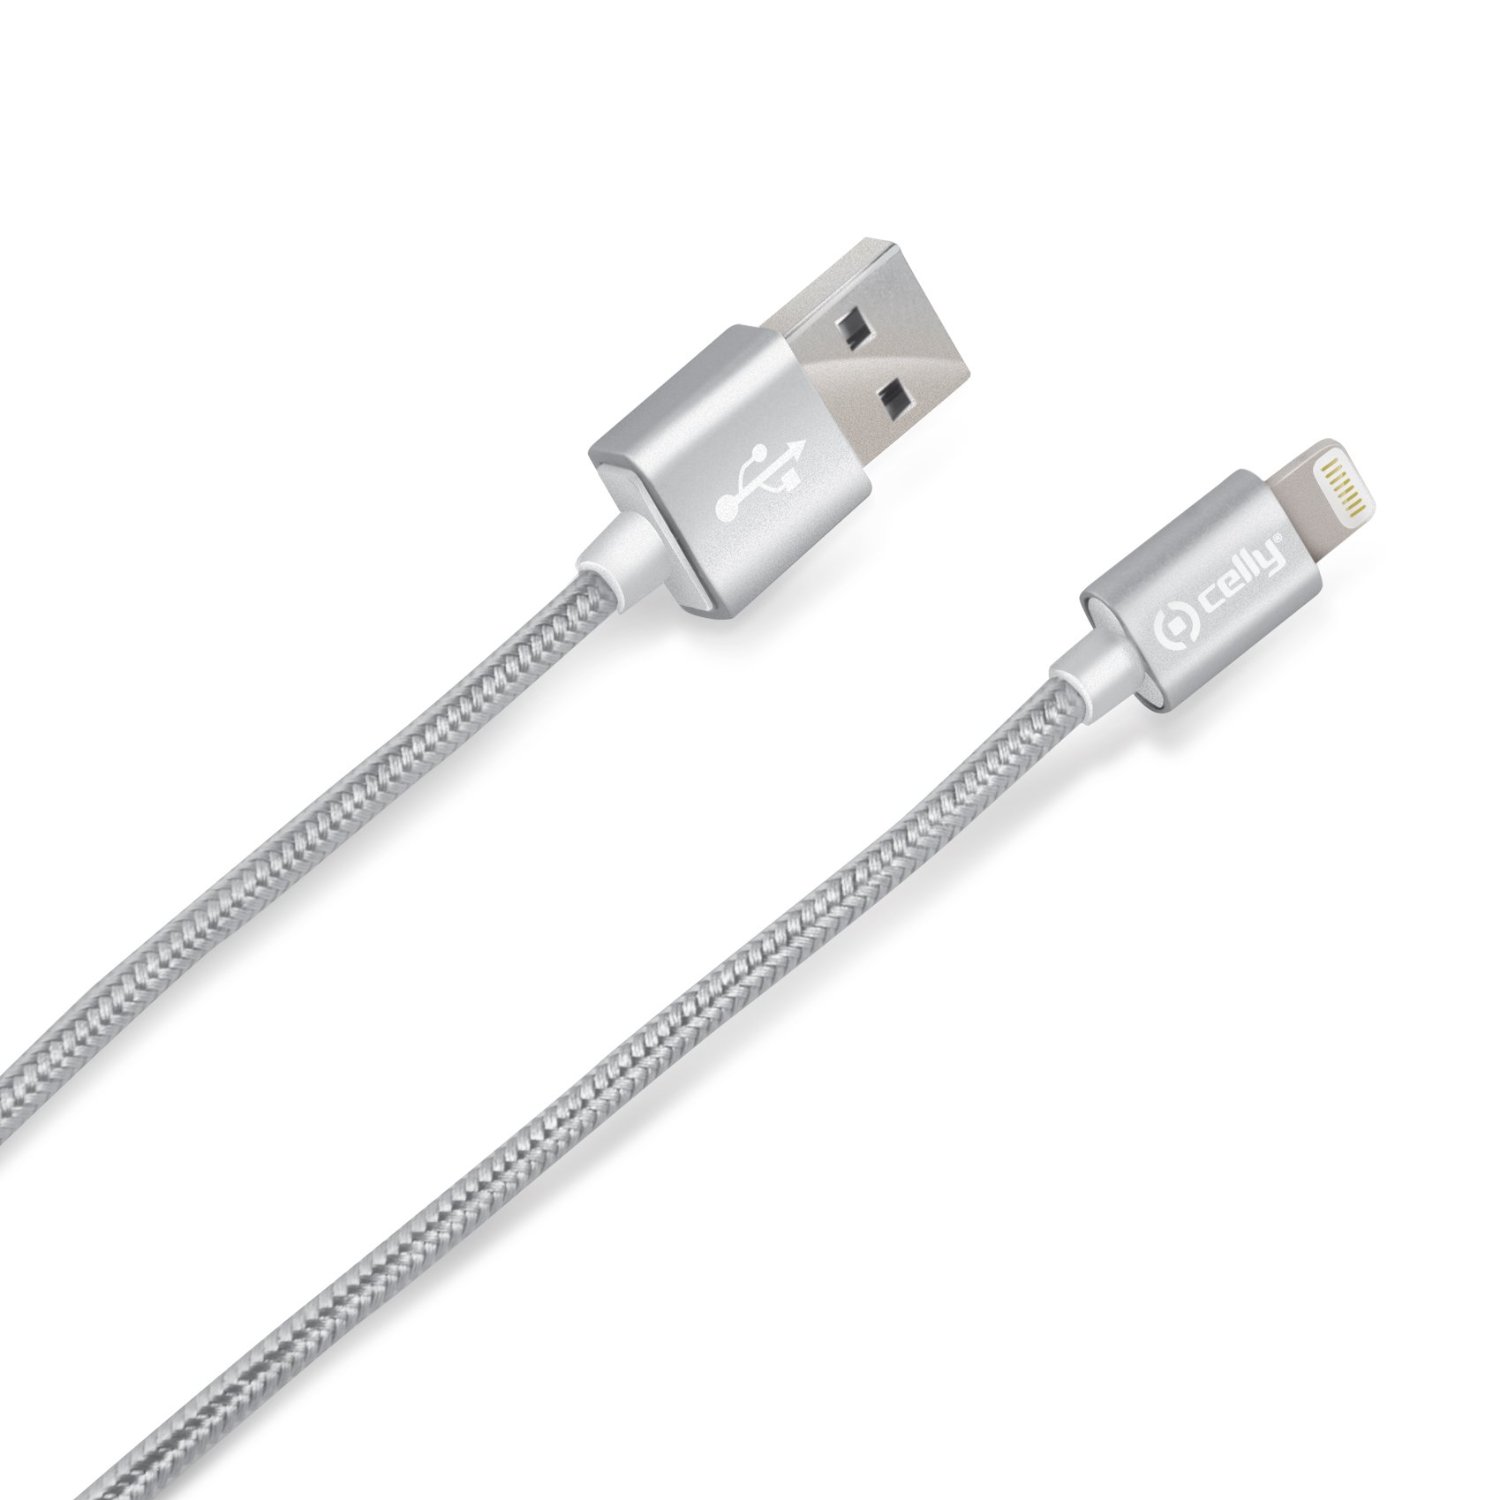  Cablu de date Celly Lighting Textil, USB, Argintiu 